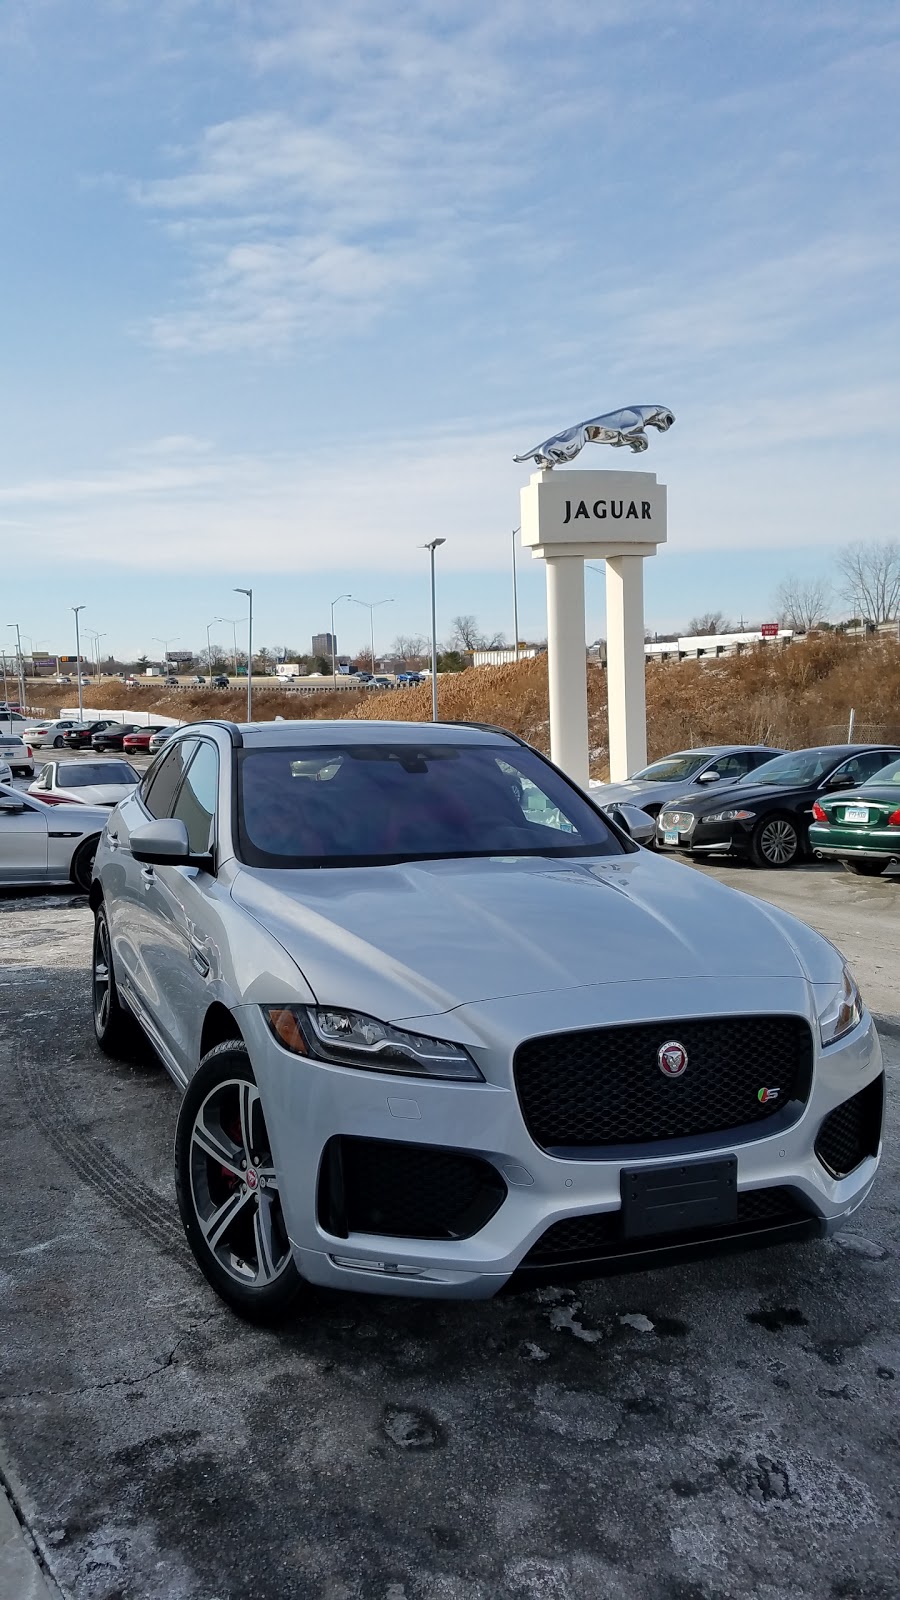 Jaguar Hartford | 133 Leibert Rd, Hartford, CT 06120 | Phone: (860) 524-0000